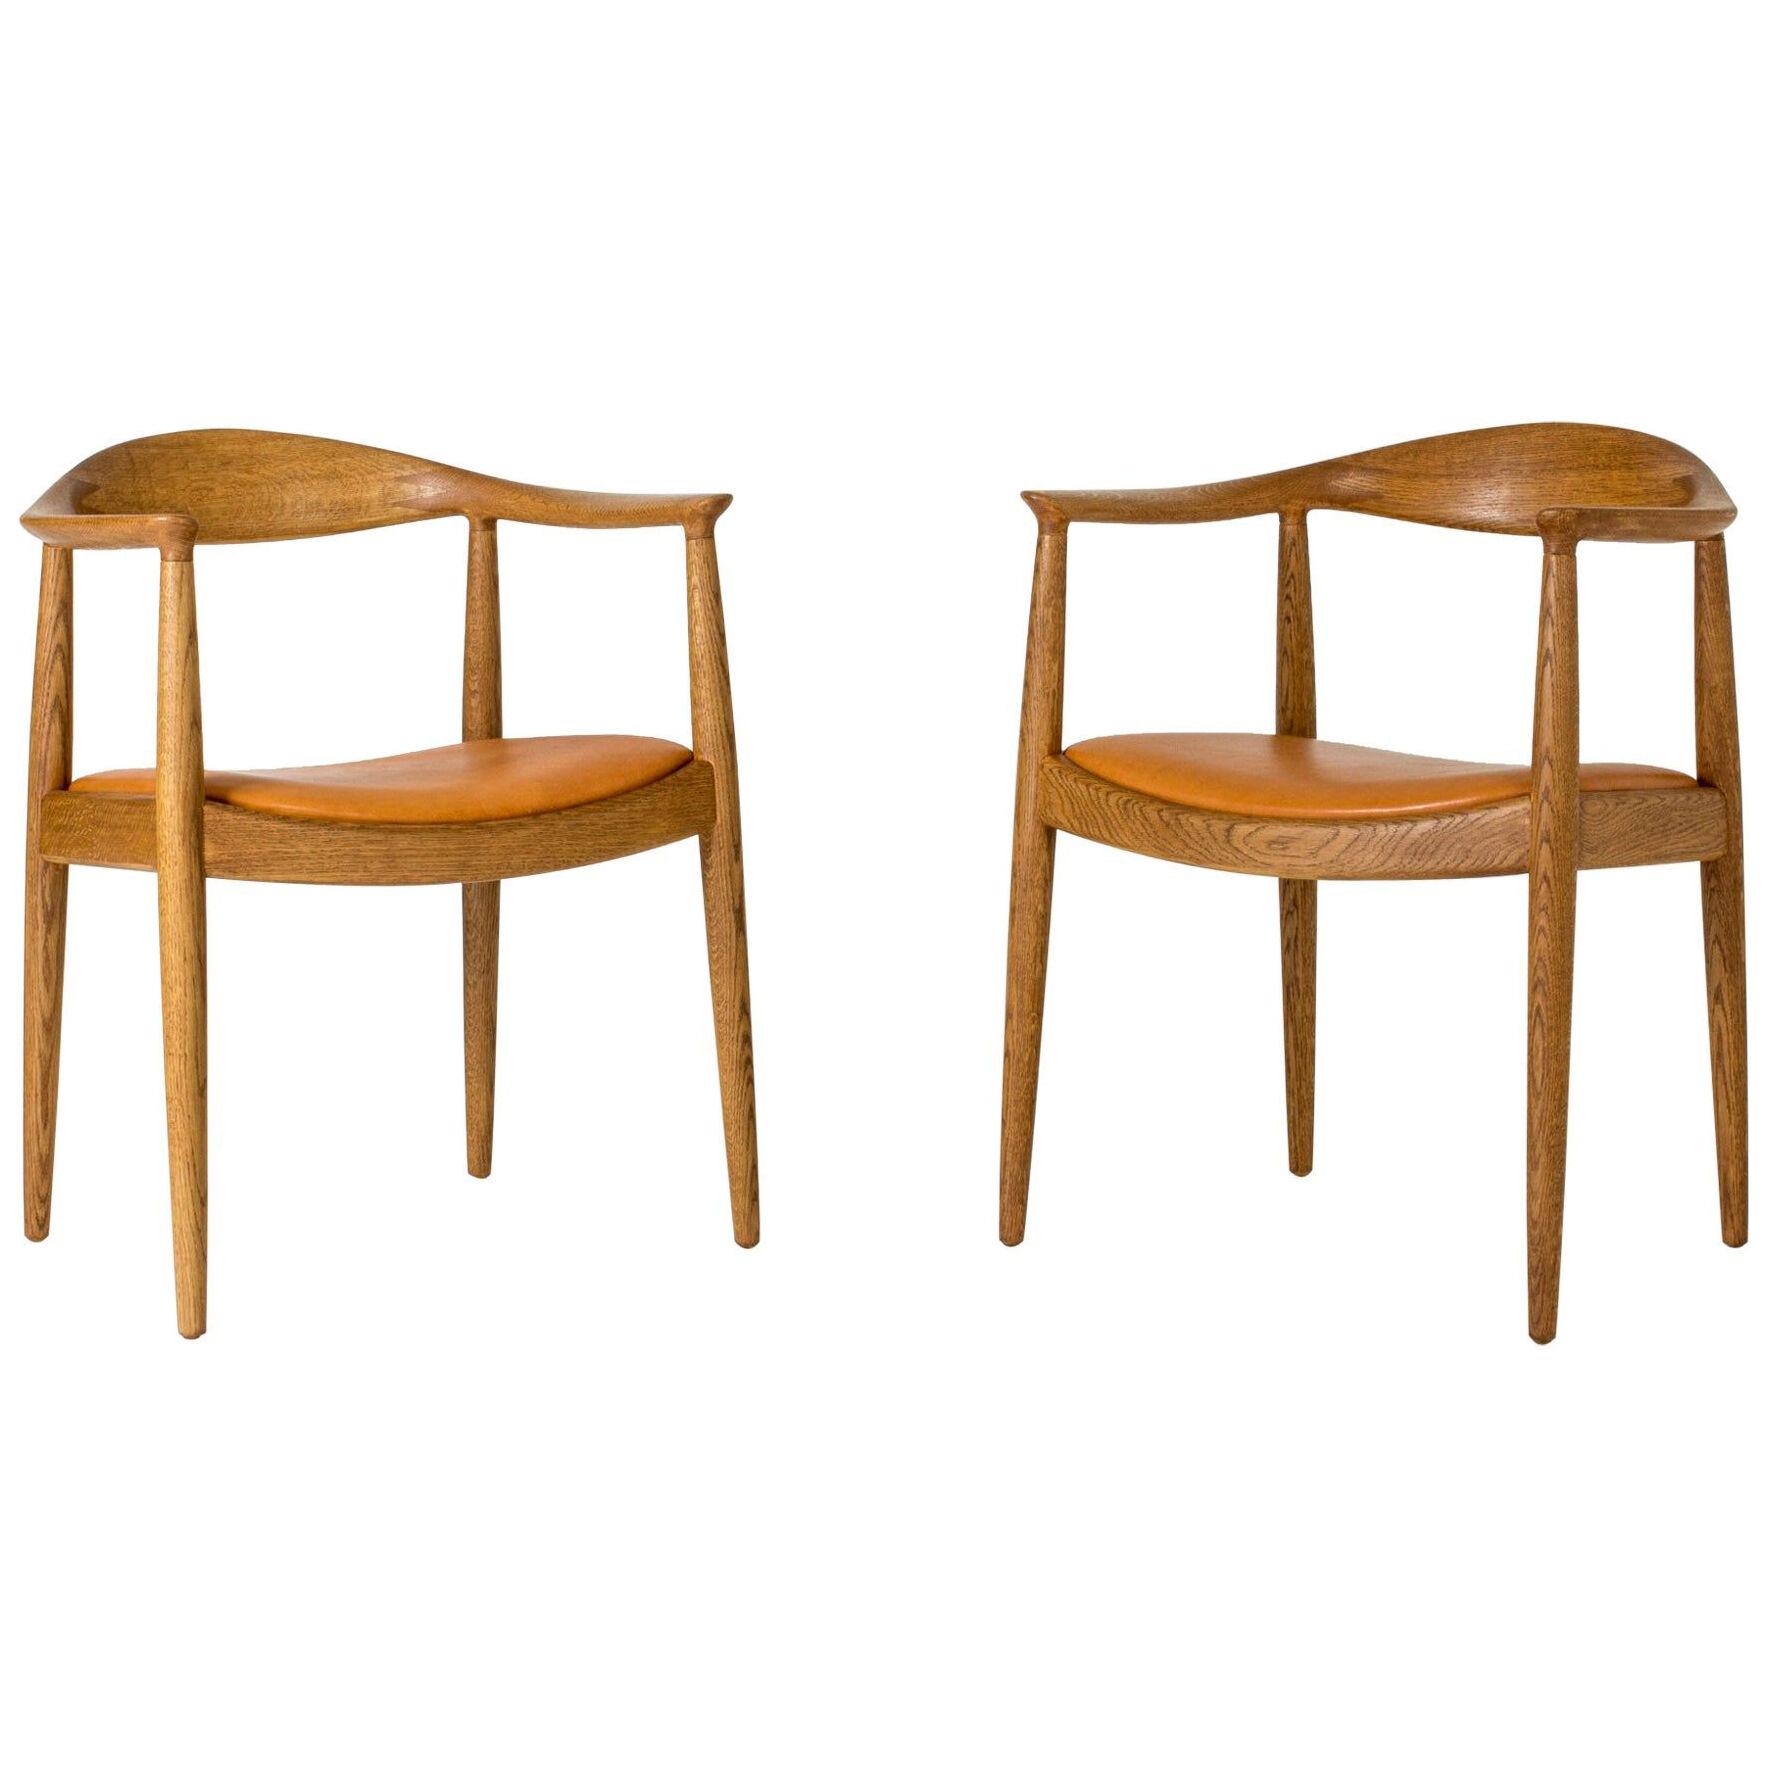 Pair of "The Chair" Armchairs by Hans J. Wegner for Johannes Hansen, Denmark